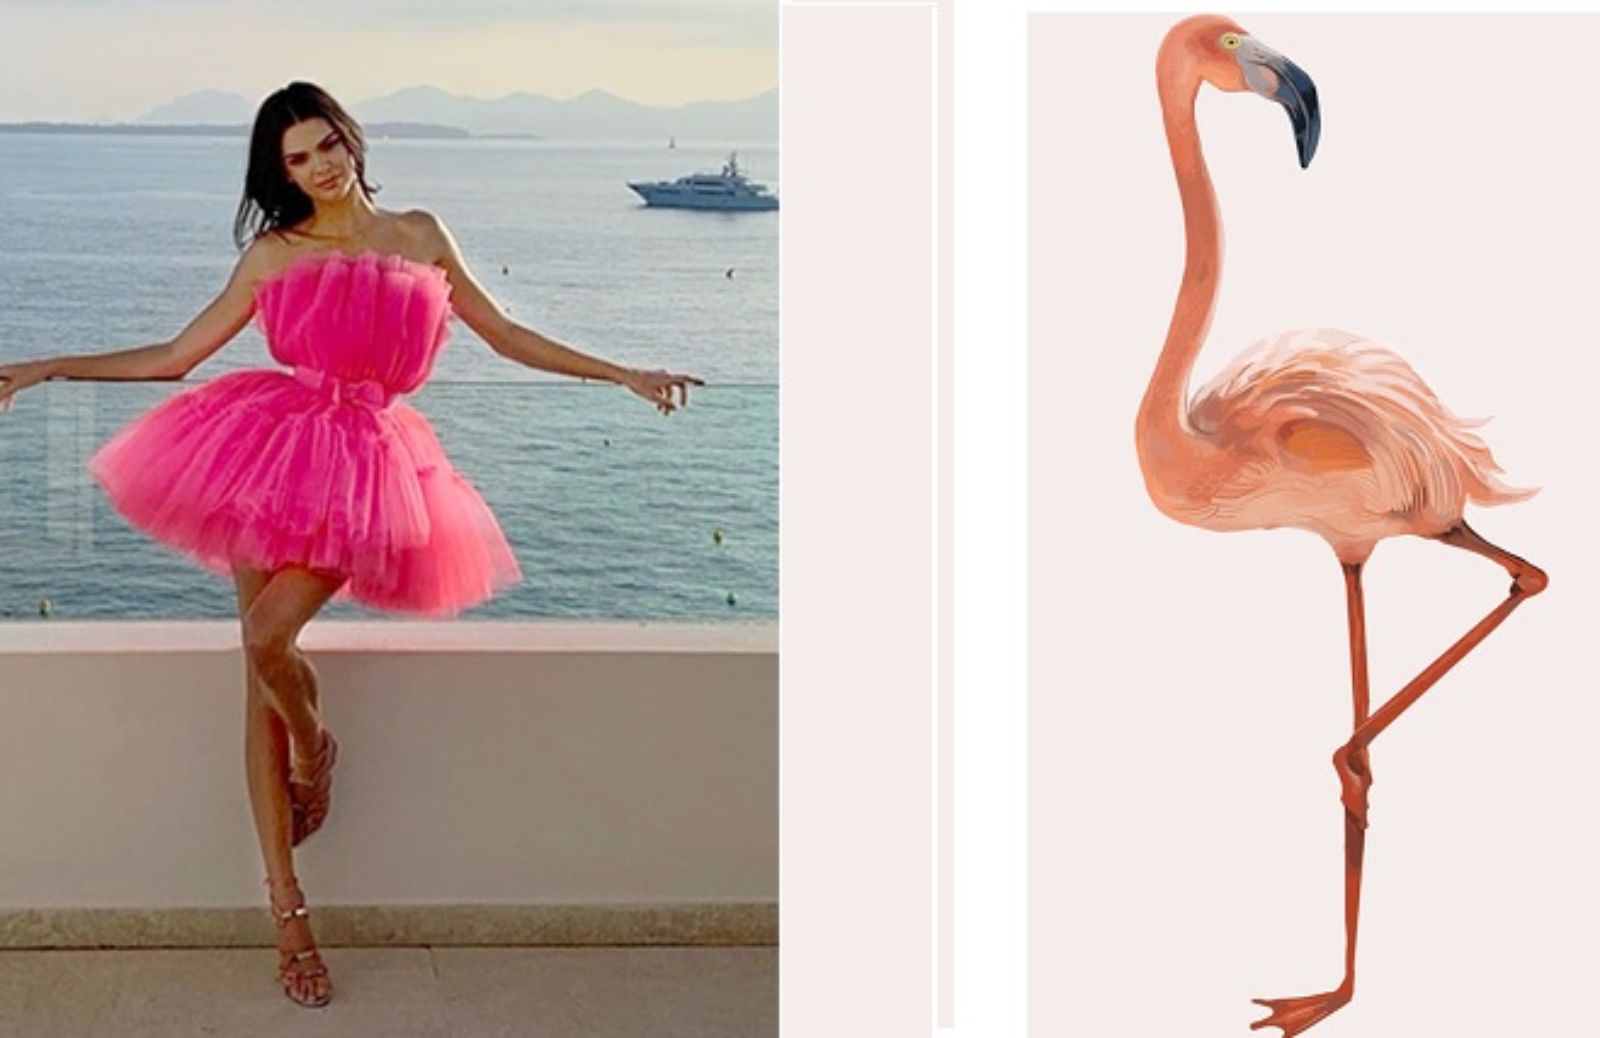 Flamingo Pose, tutto sulla tendenza Instagram dell'estate